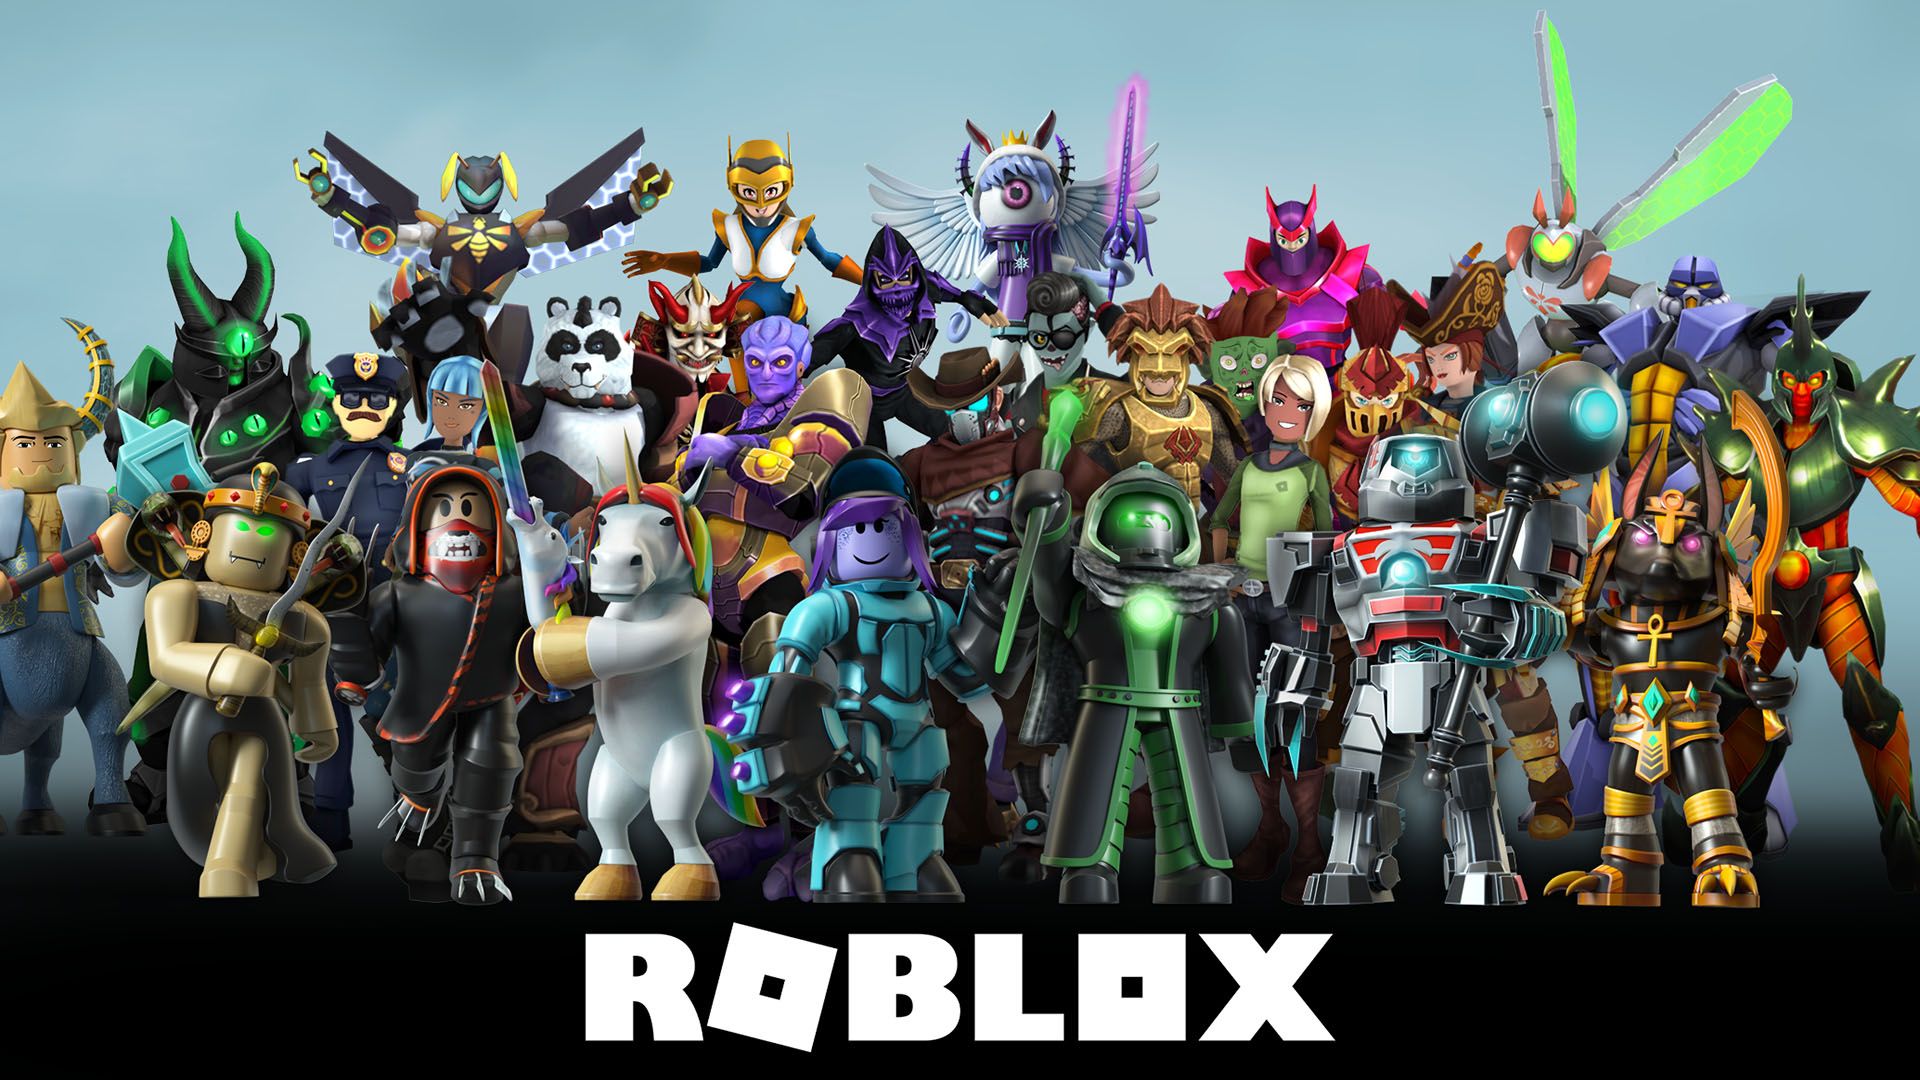 Roblox: Cómo personalizar y editar el avatar y conseguir ropa gratis